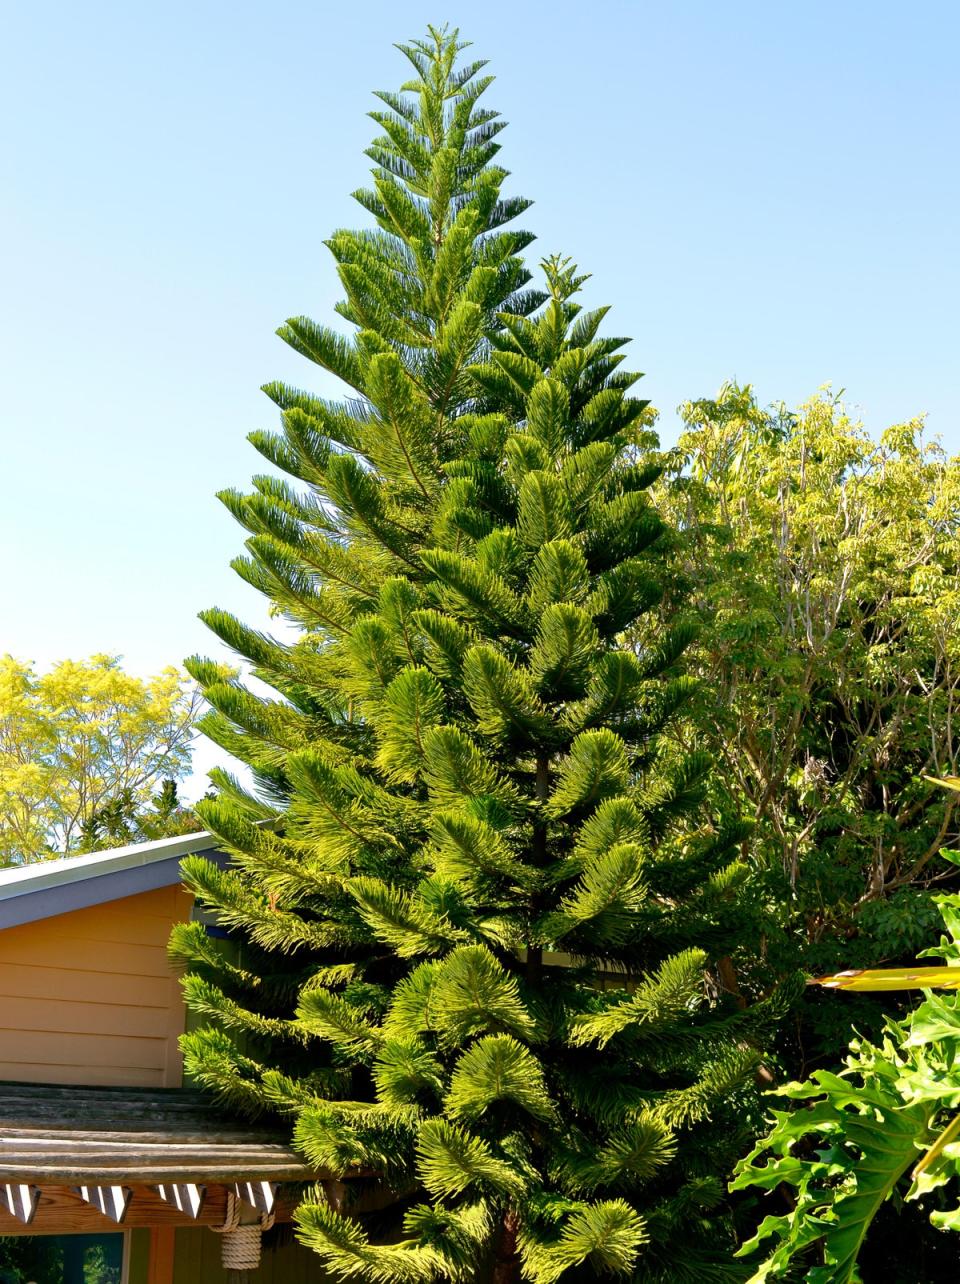 A Norfolk Island pine (Alamy Stock Photo)